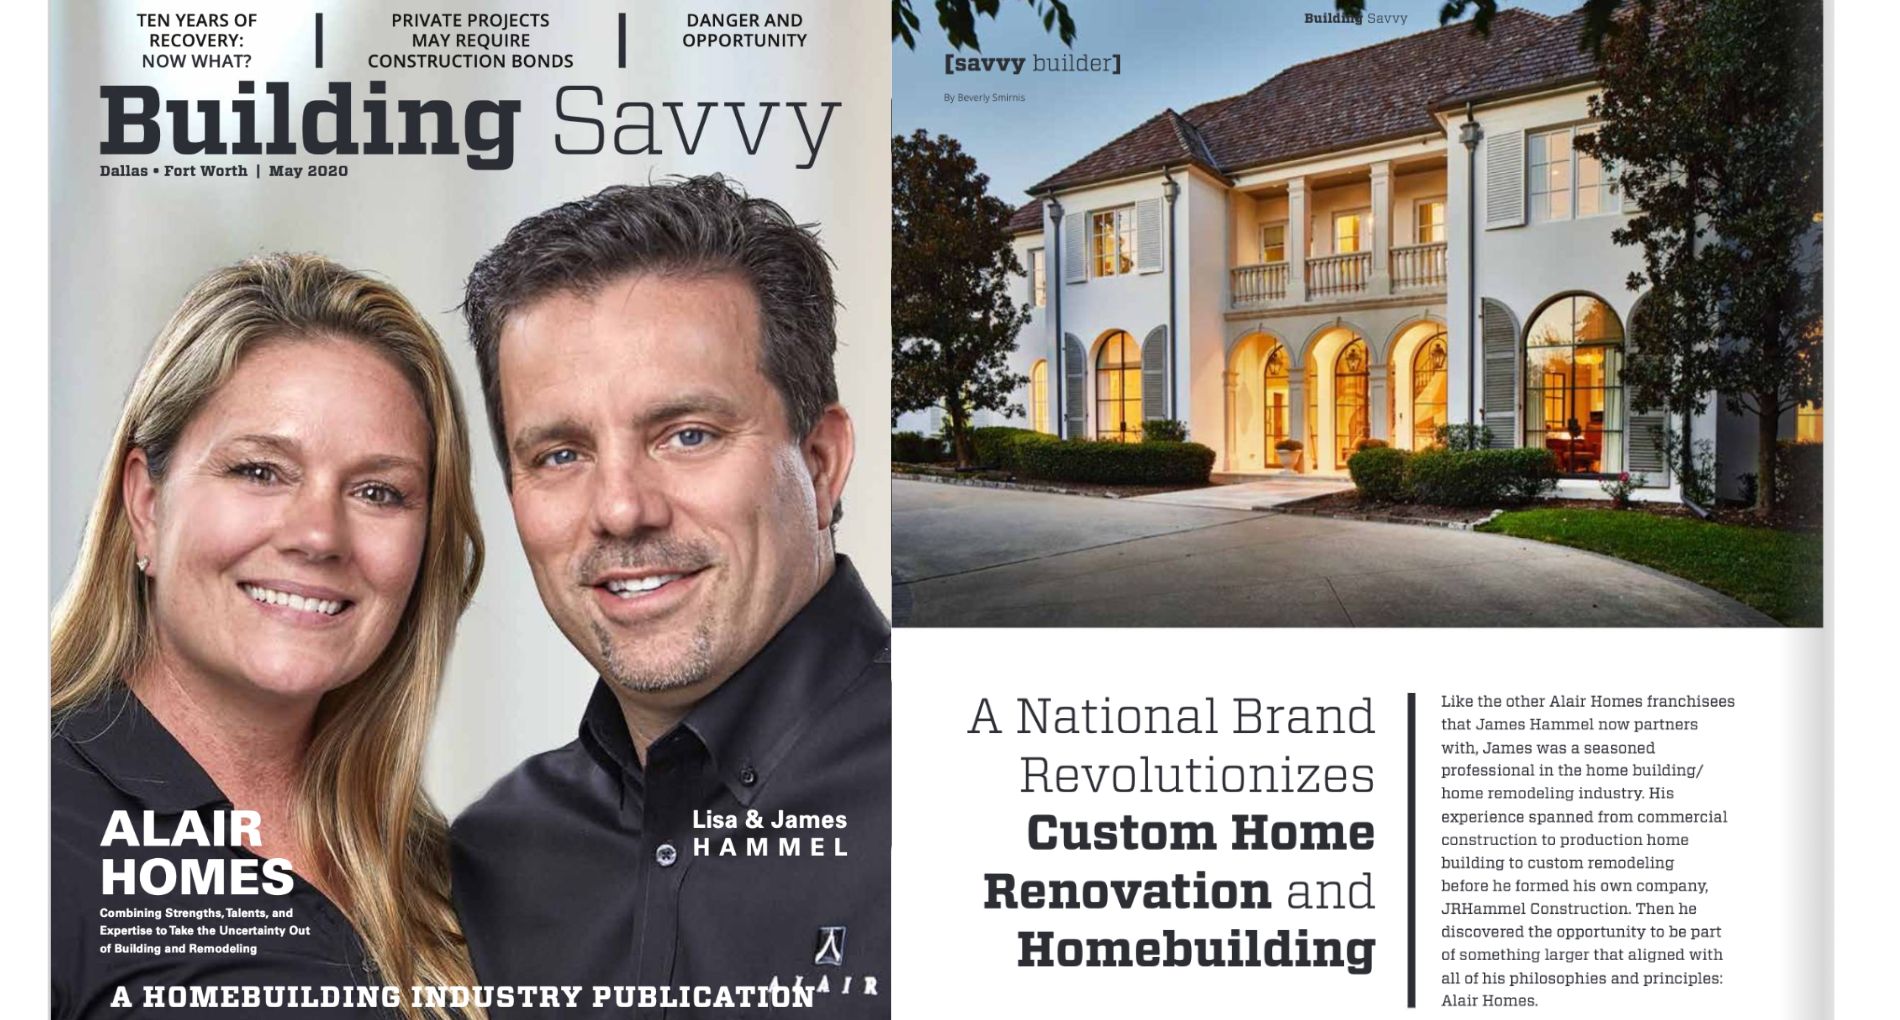 A National Brand Revolutionizes Custom Home Renovation and Homebuilding 